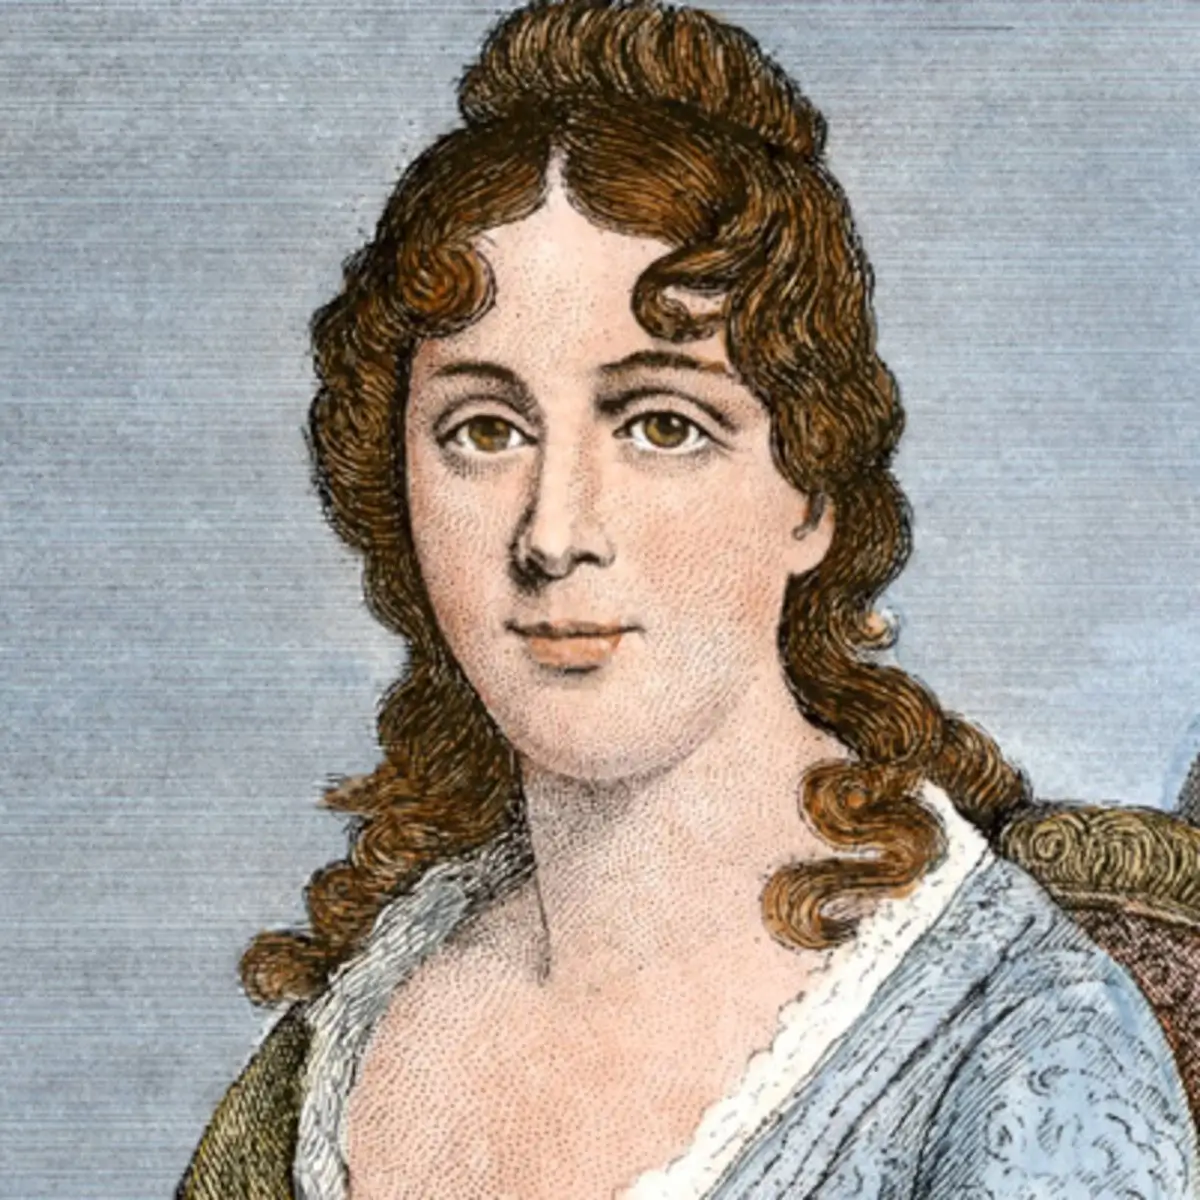 Martha Wayles Skelton Jefferson, wife of Thomas Jefferson